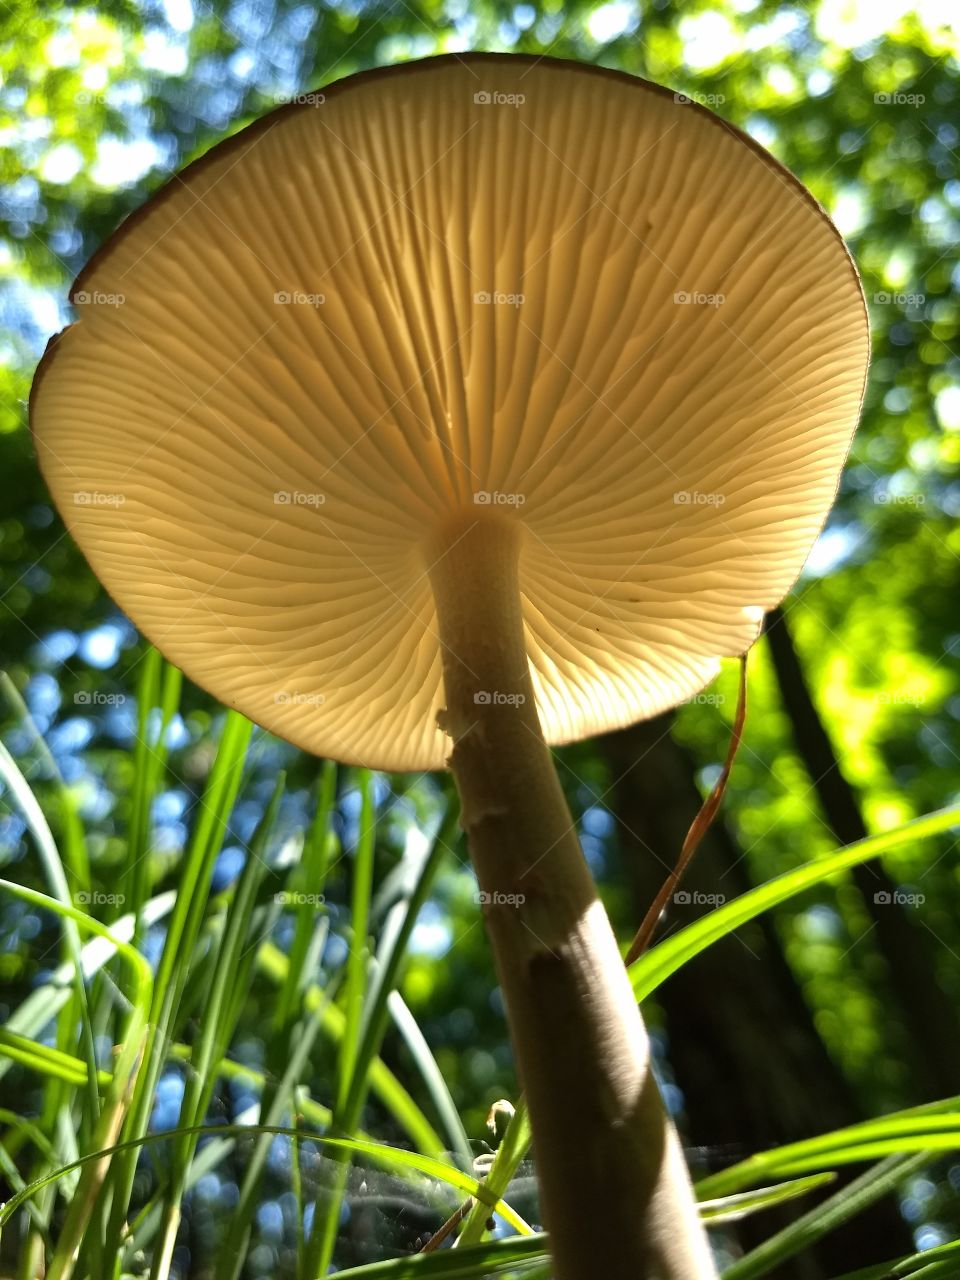 from under a mushroom